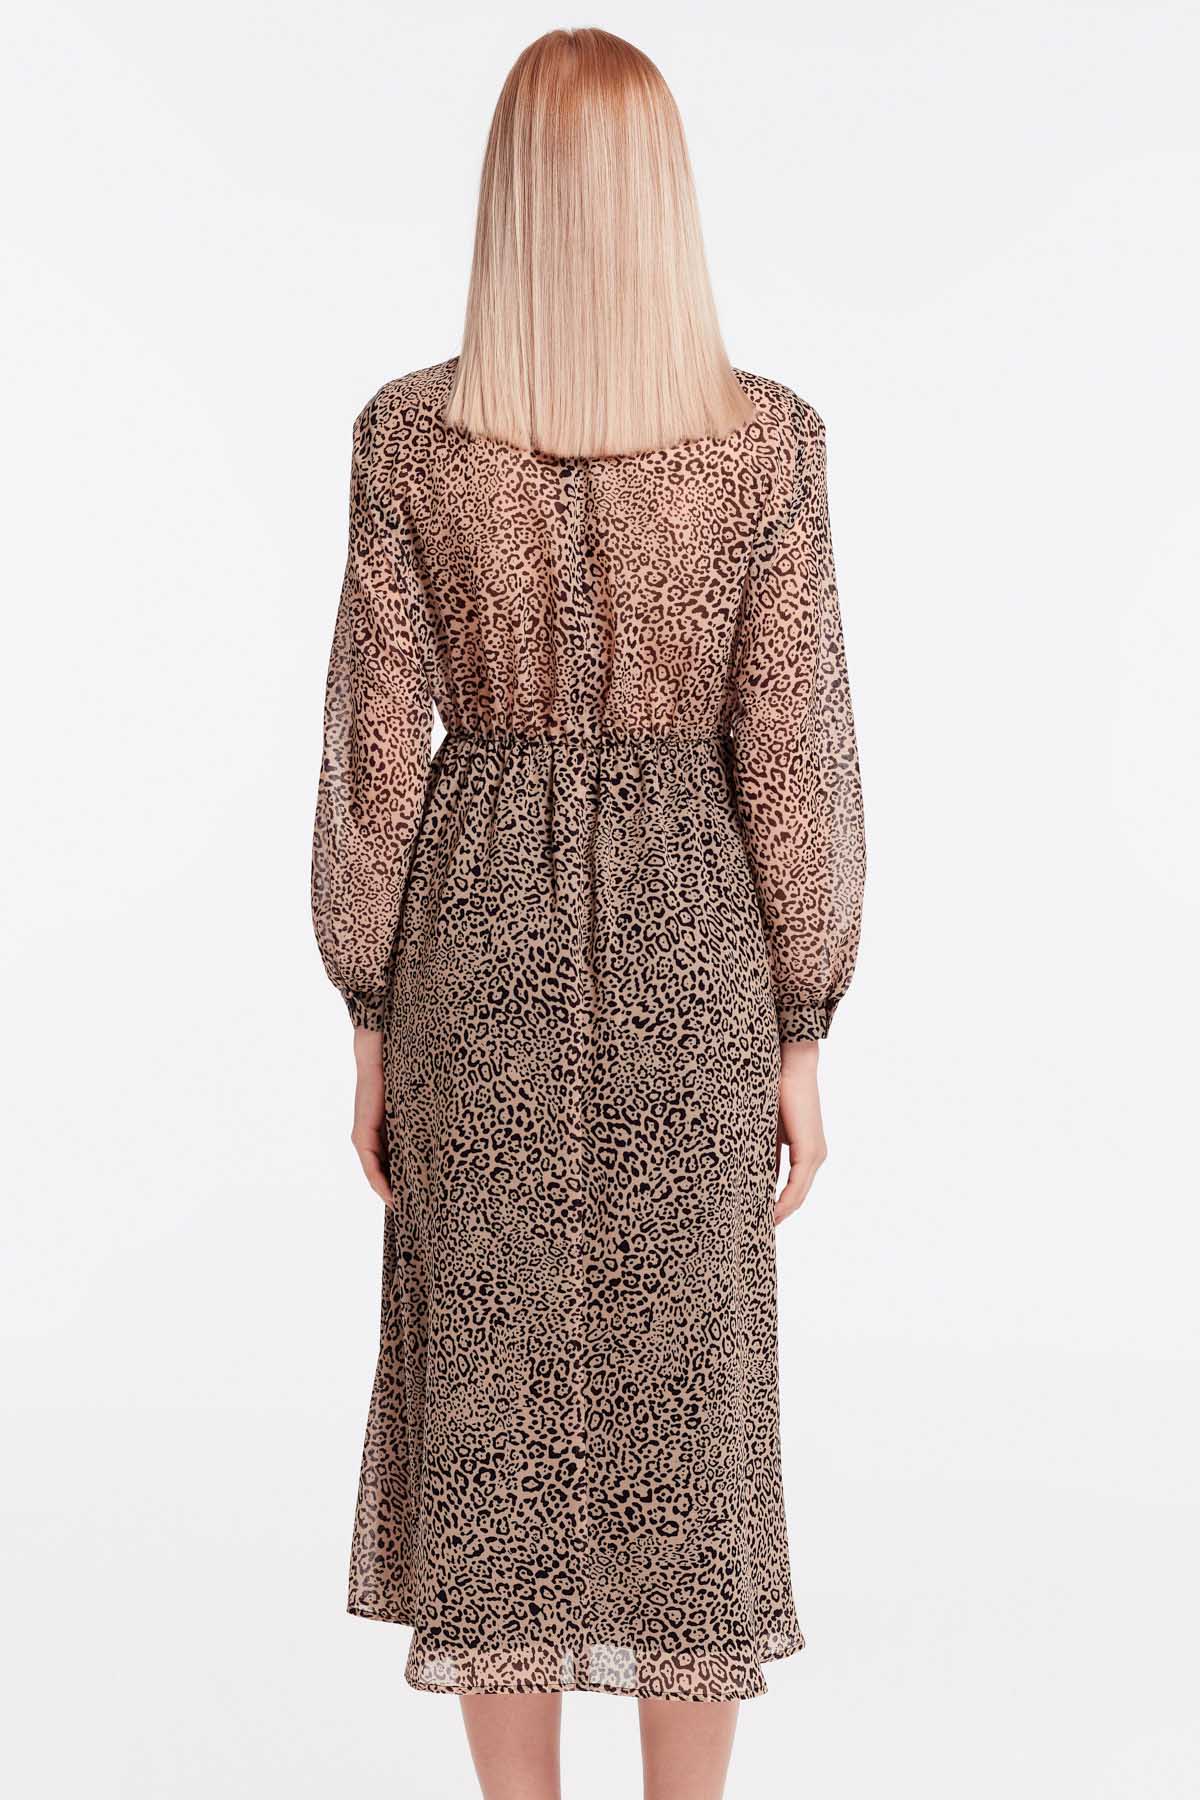 Сукня міді з леопардовим принтом зі складками, фото 5